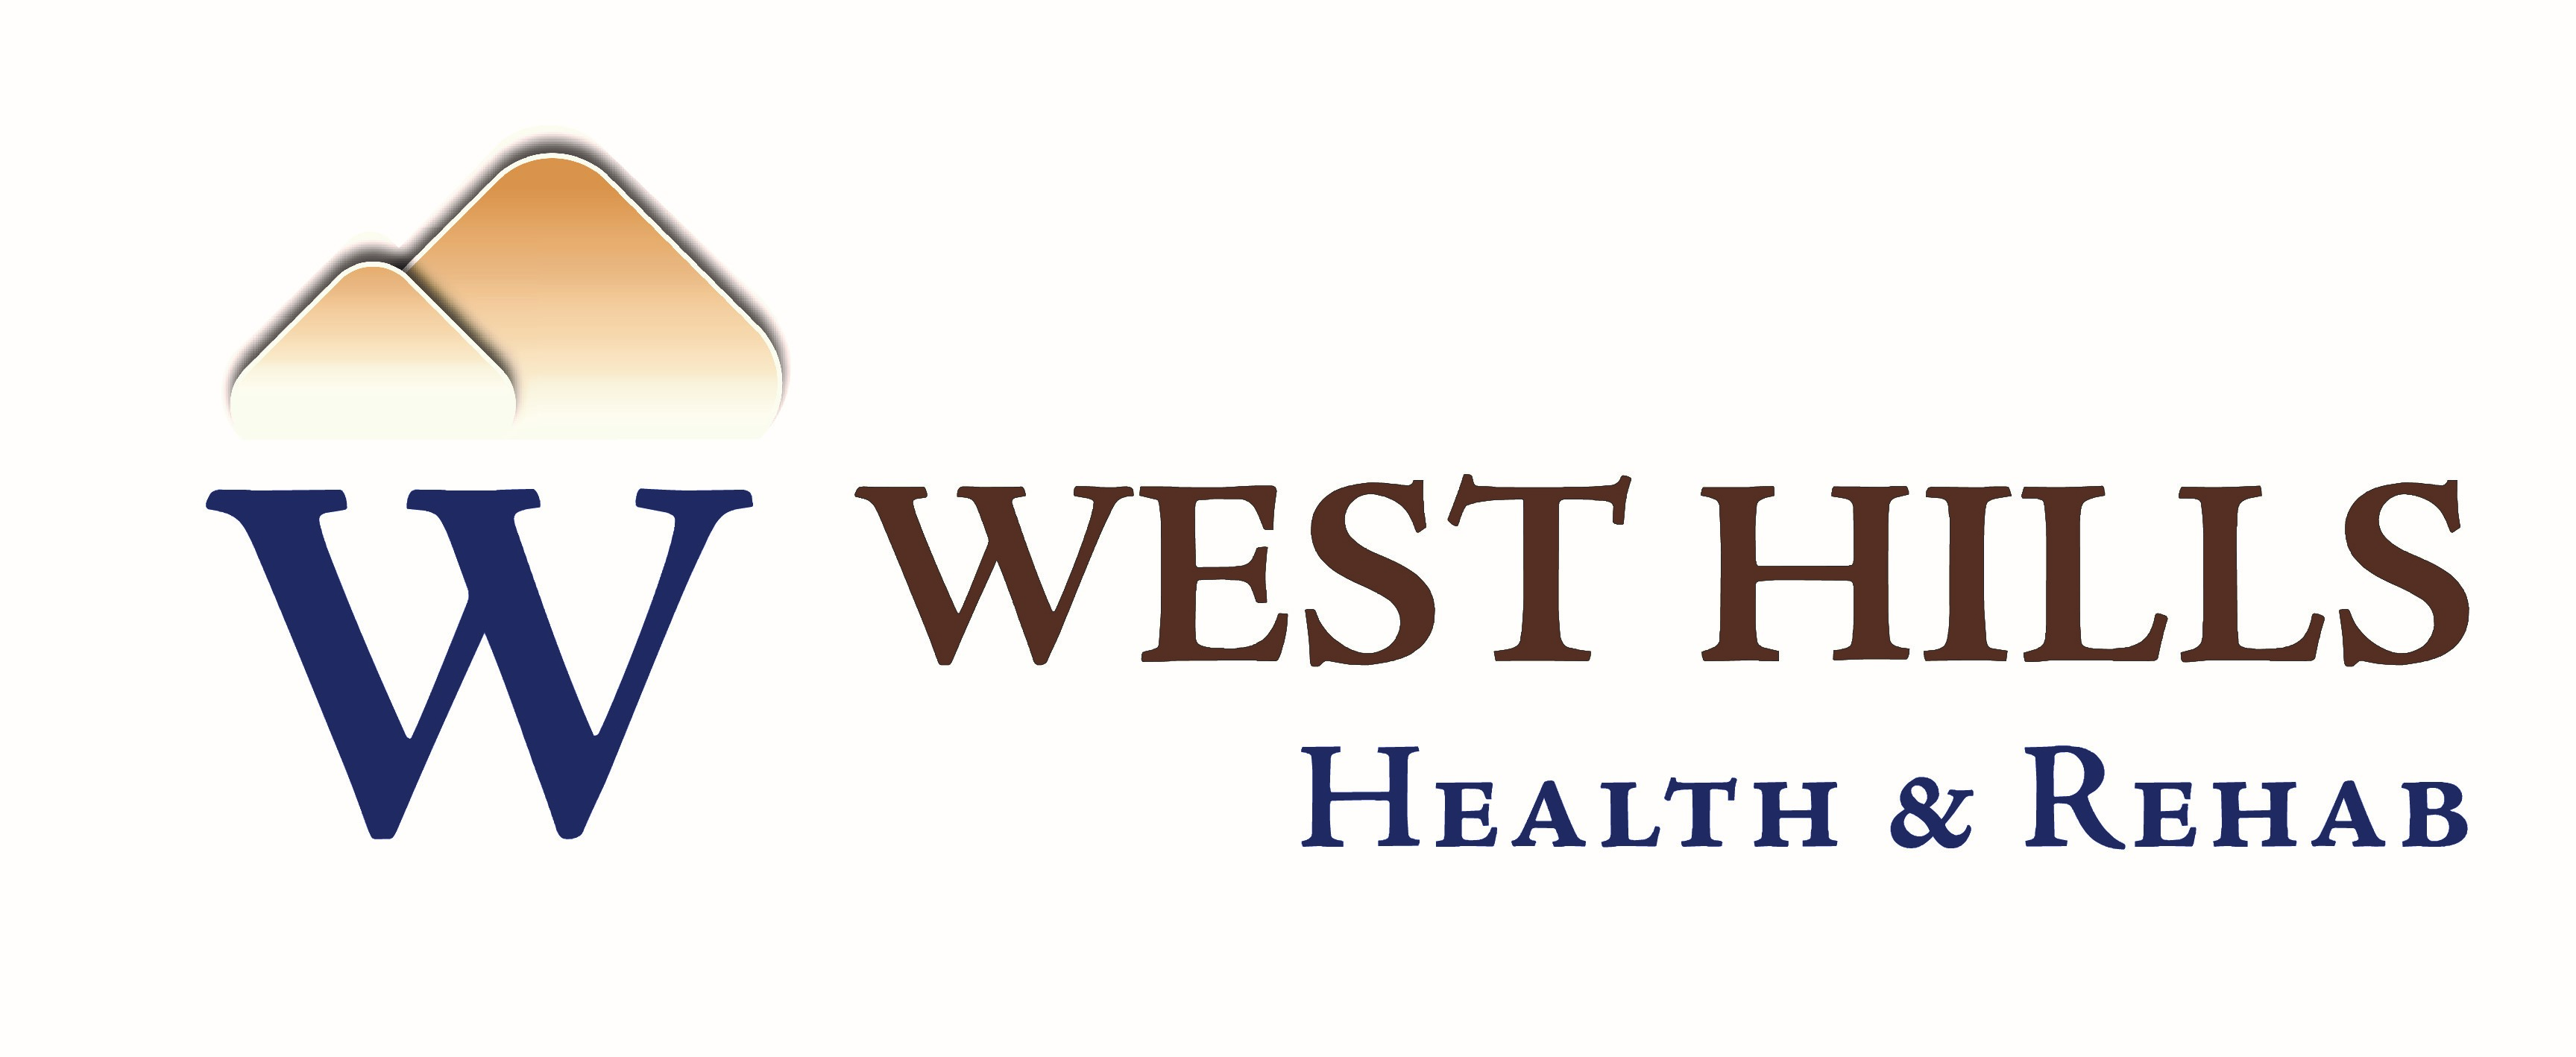 13.Centro de salud y rehabilitación de West Hills (Bronce)